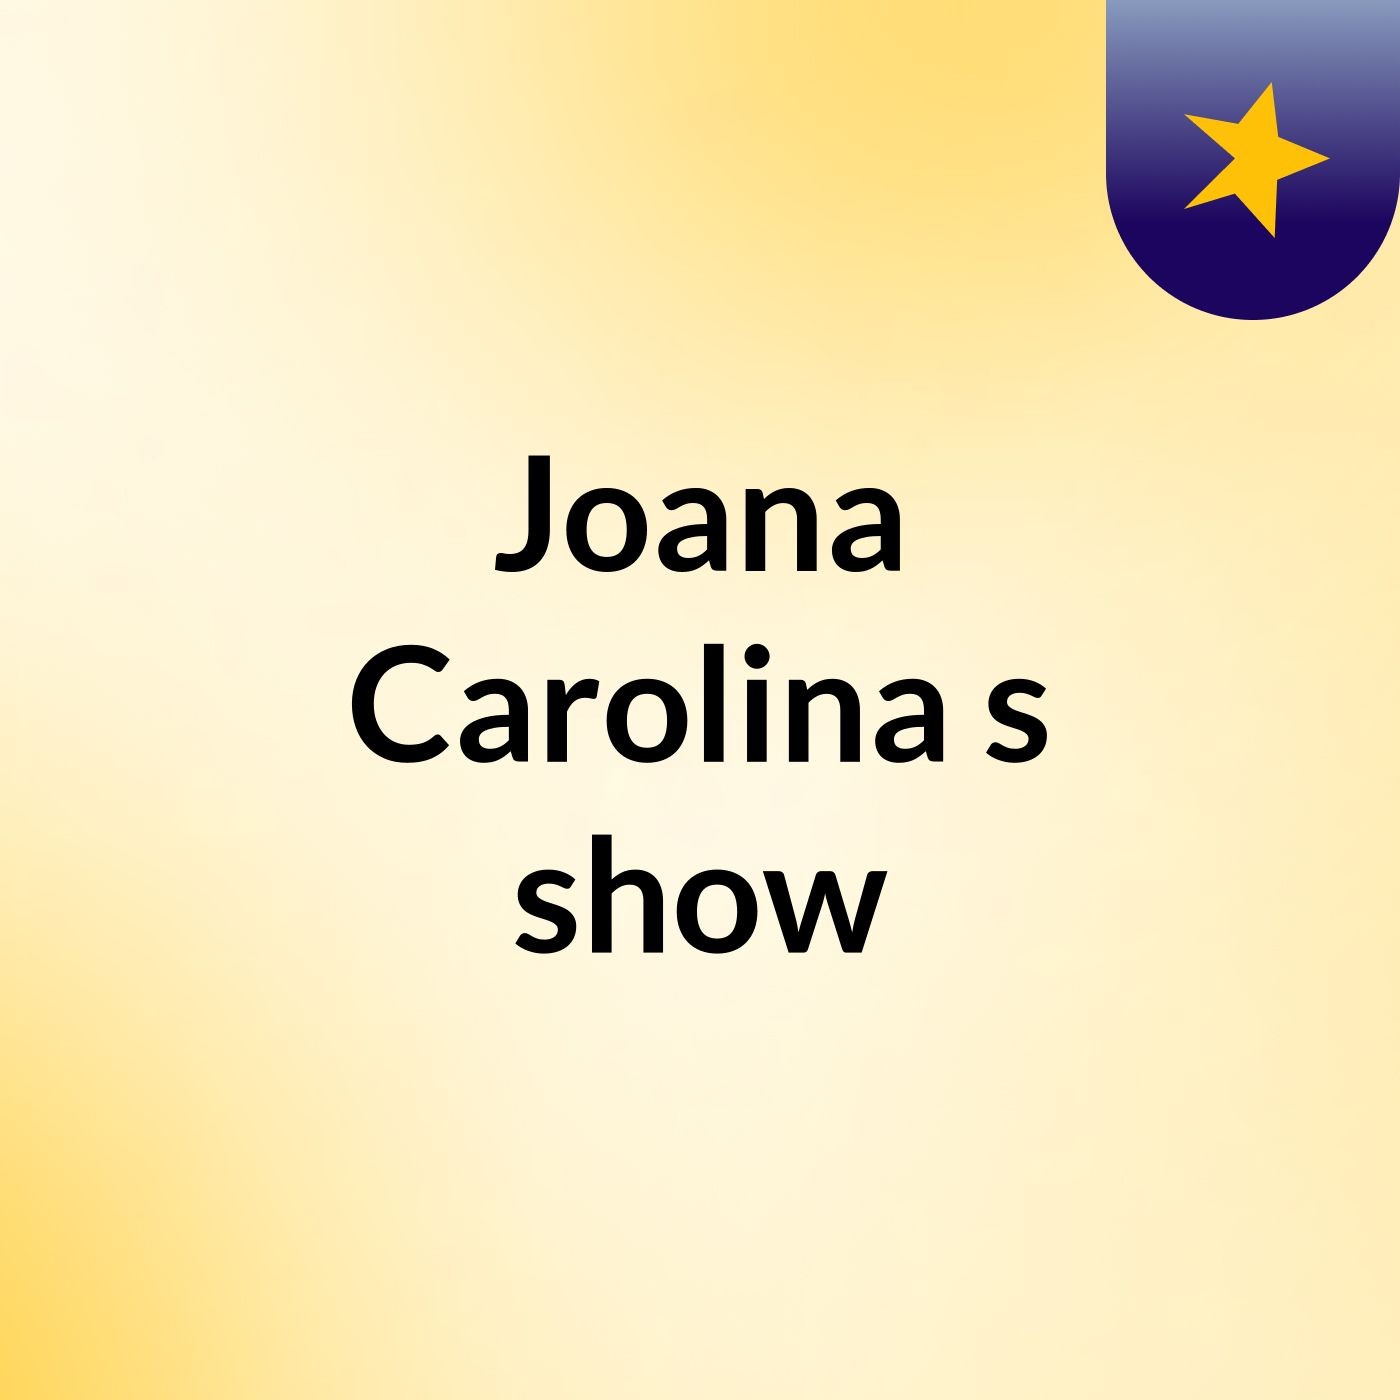 Joana Carolina's show